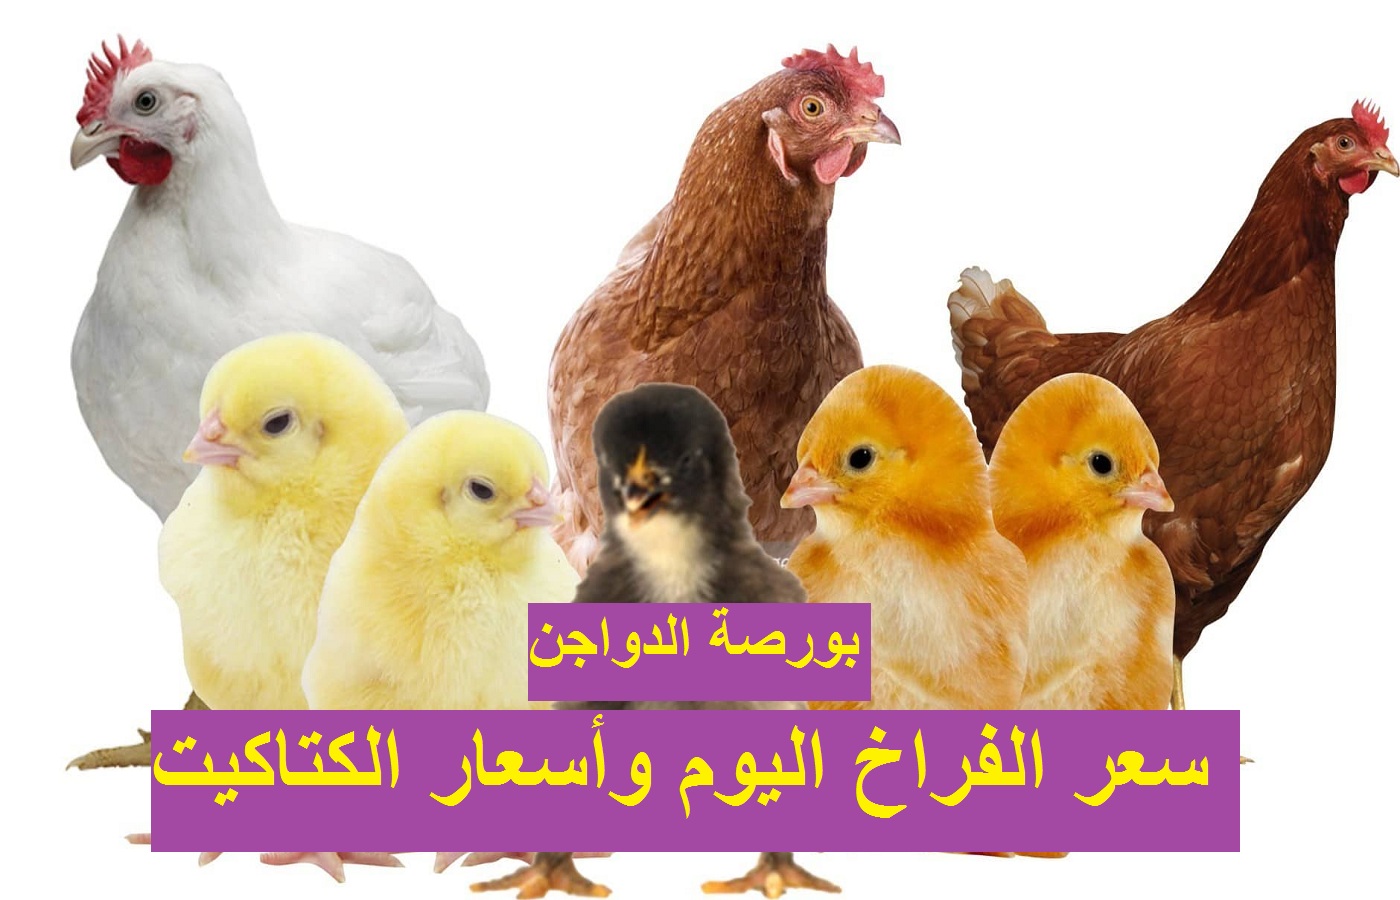 سعر الفراخ اليوم الأربعاء 29 ديسمبر 2021 بعد ارتفاع أسعار البيض 49